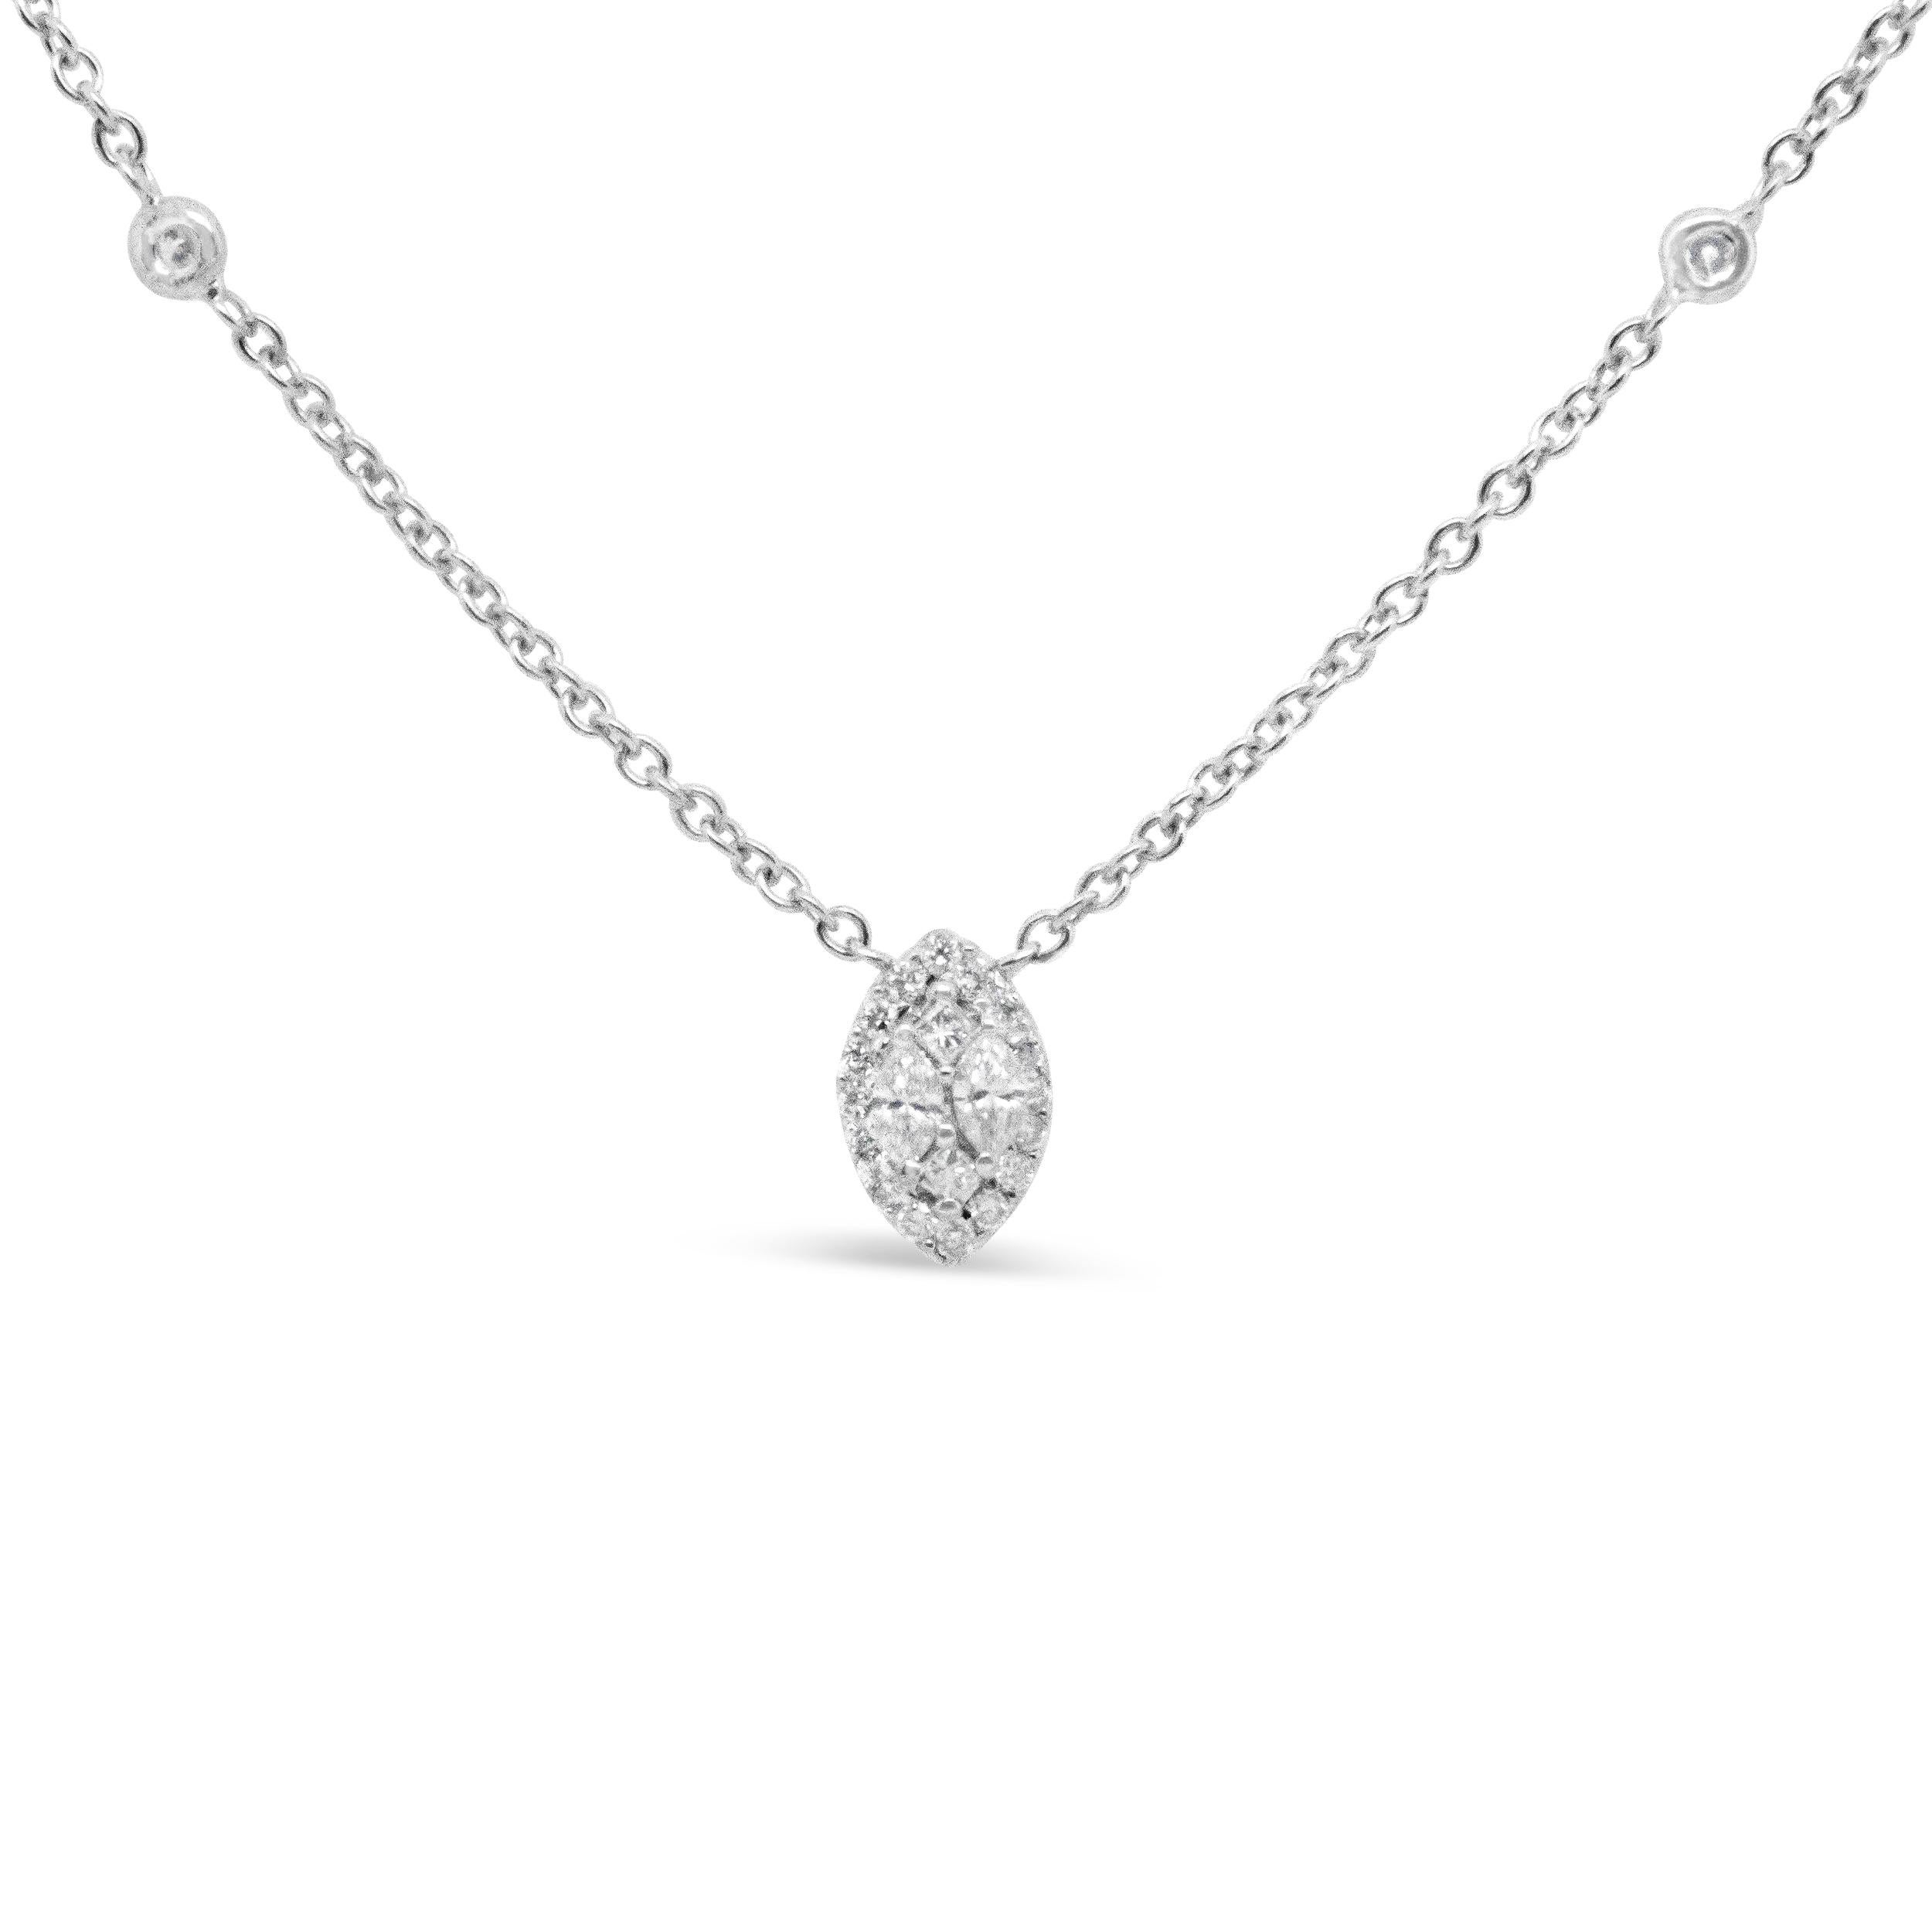 Un air de sophistication entoure ce magnifique collier à diamants en or blanc 14 carats véritable. Parsemé de pierres étincelantes serties en biseau sur les côtés, le centre éblouissant de ce collier spectaculaire attire tous les regards. En son